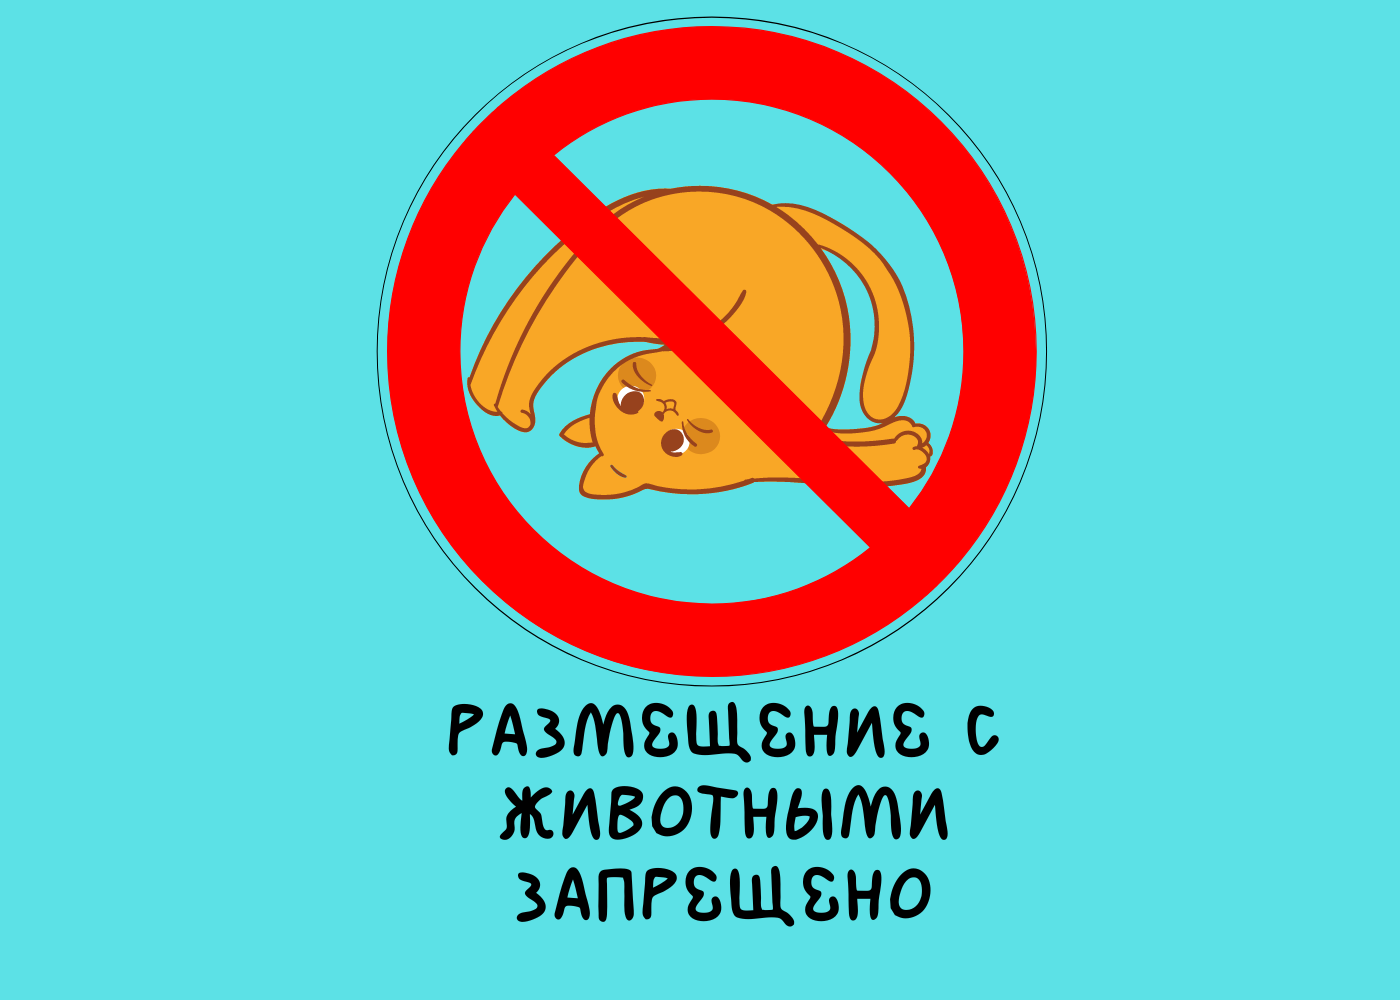 Проживание с животными в наших квартирах запрещено 🚫